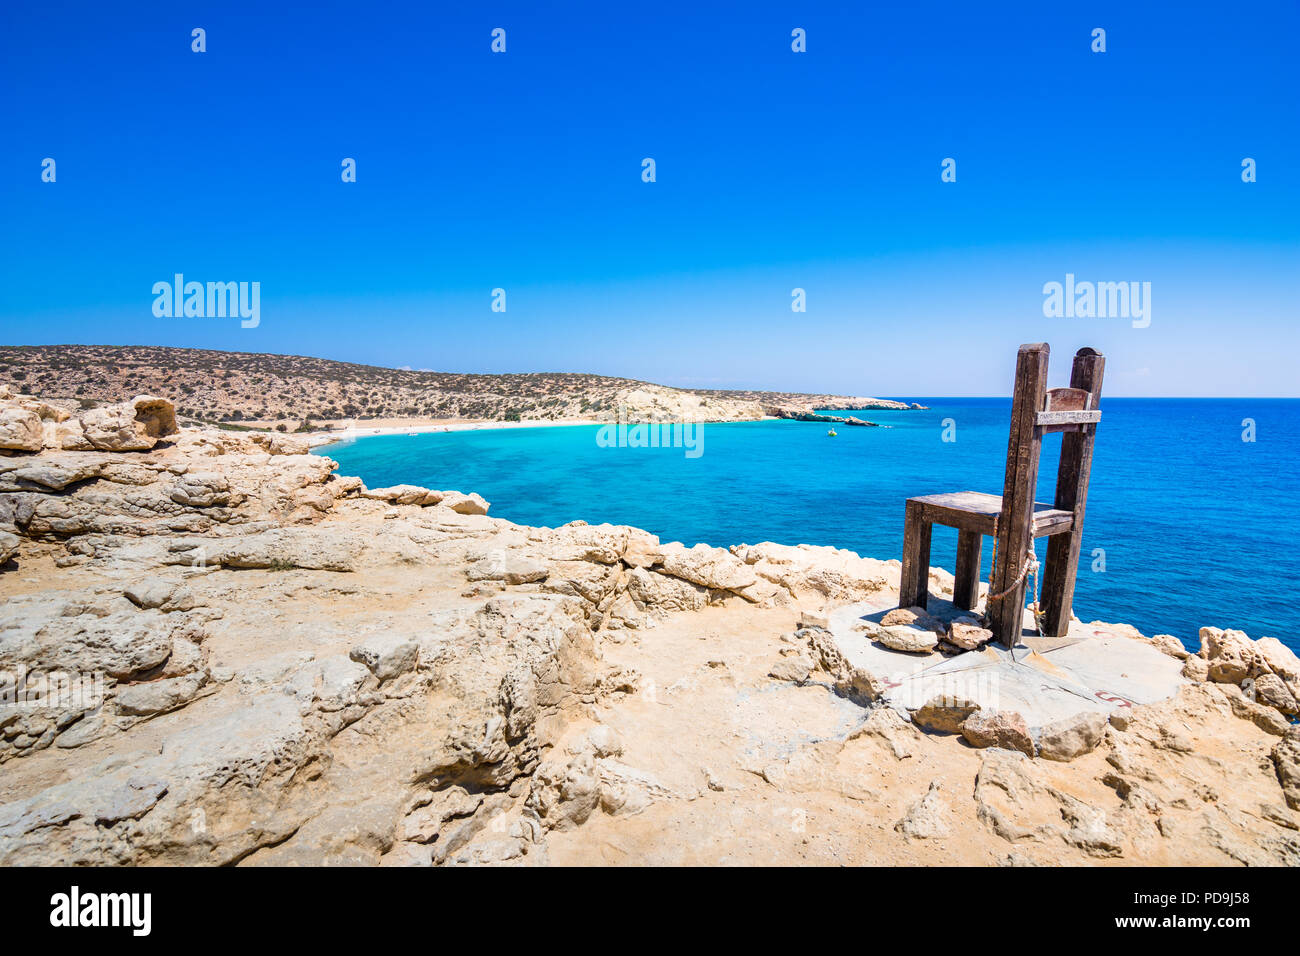 Le tropical plage de Tripiti à la pointe sud de l'île de Gavdos et l'Europe aussi, avec le fameux géant chaise en bois, la Grèce. Banque D'Images